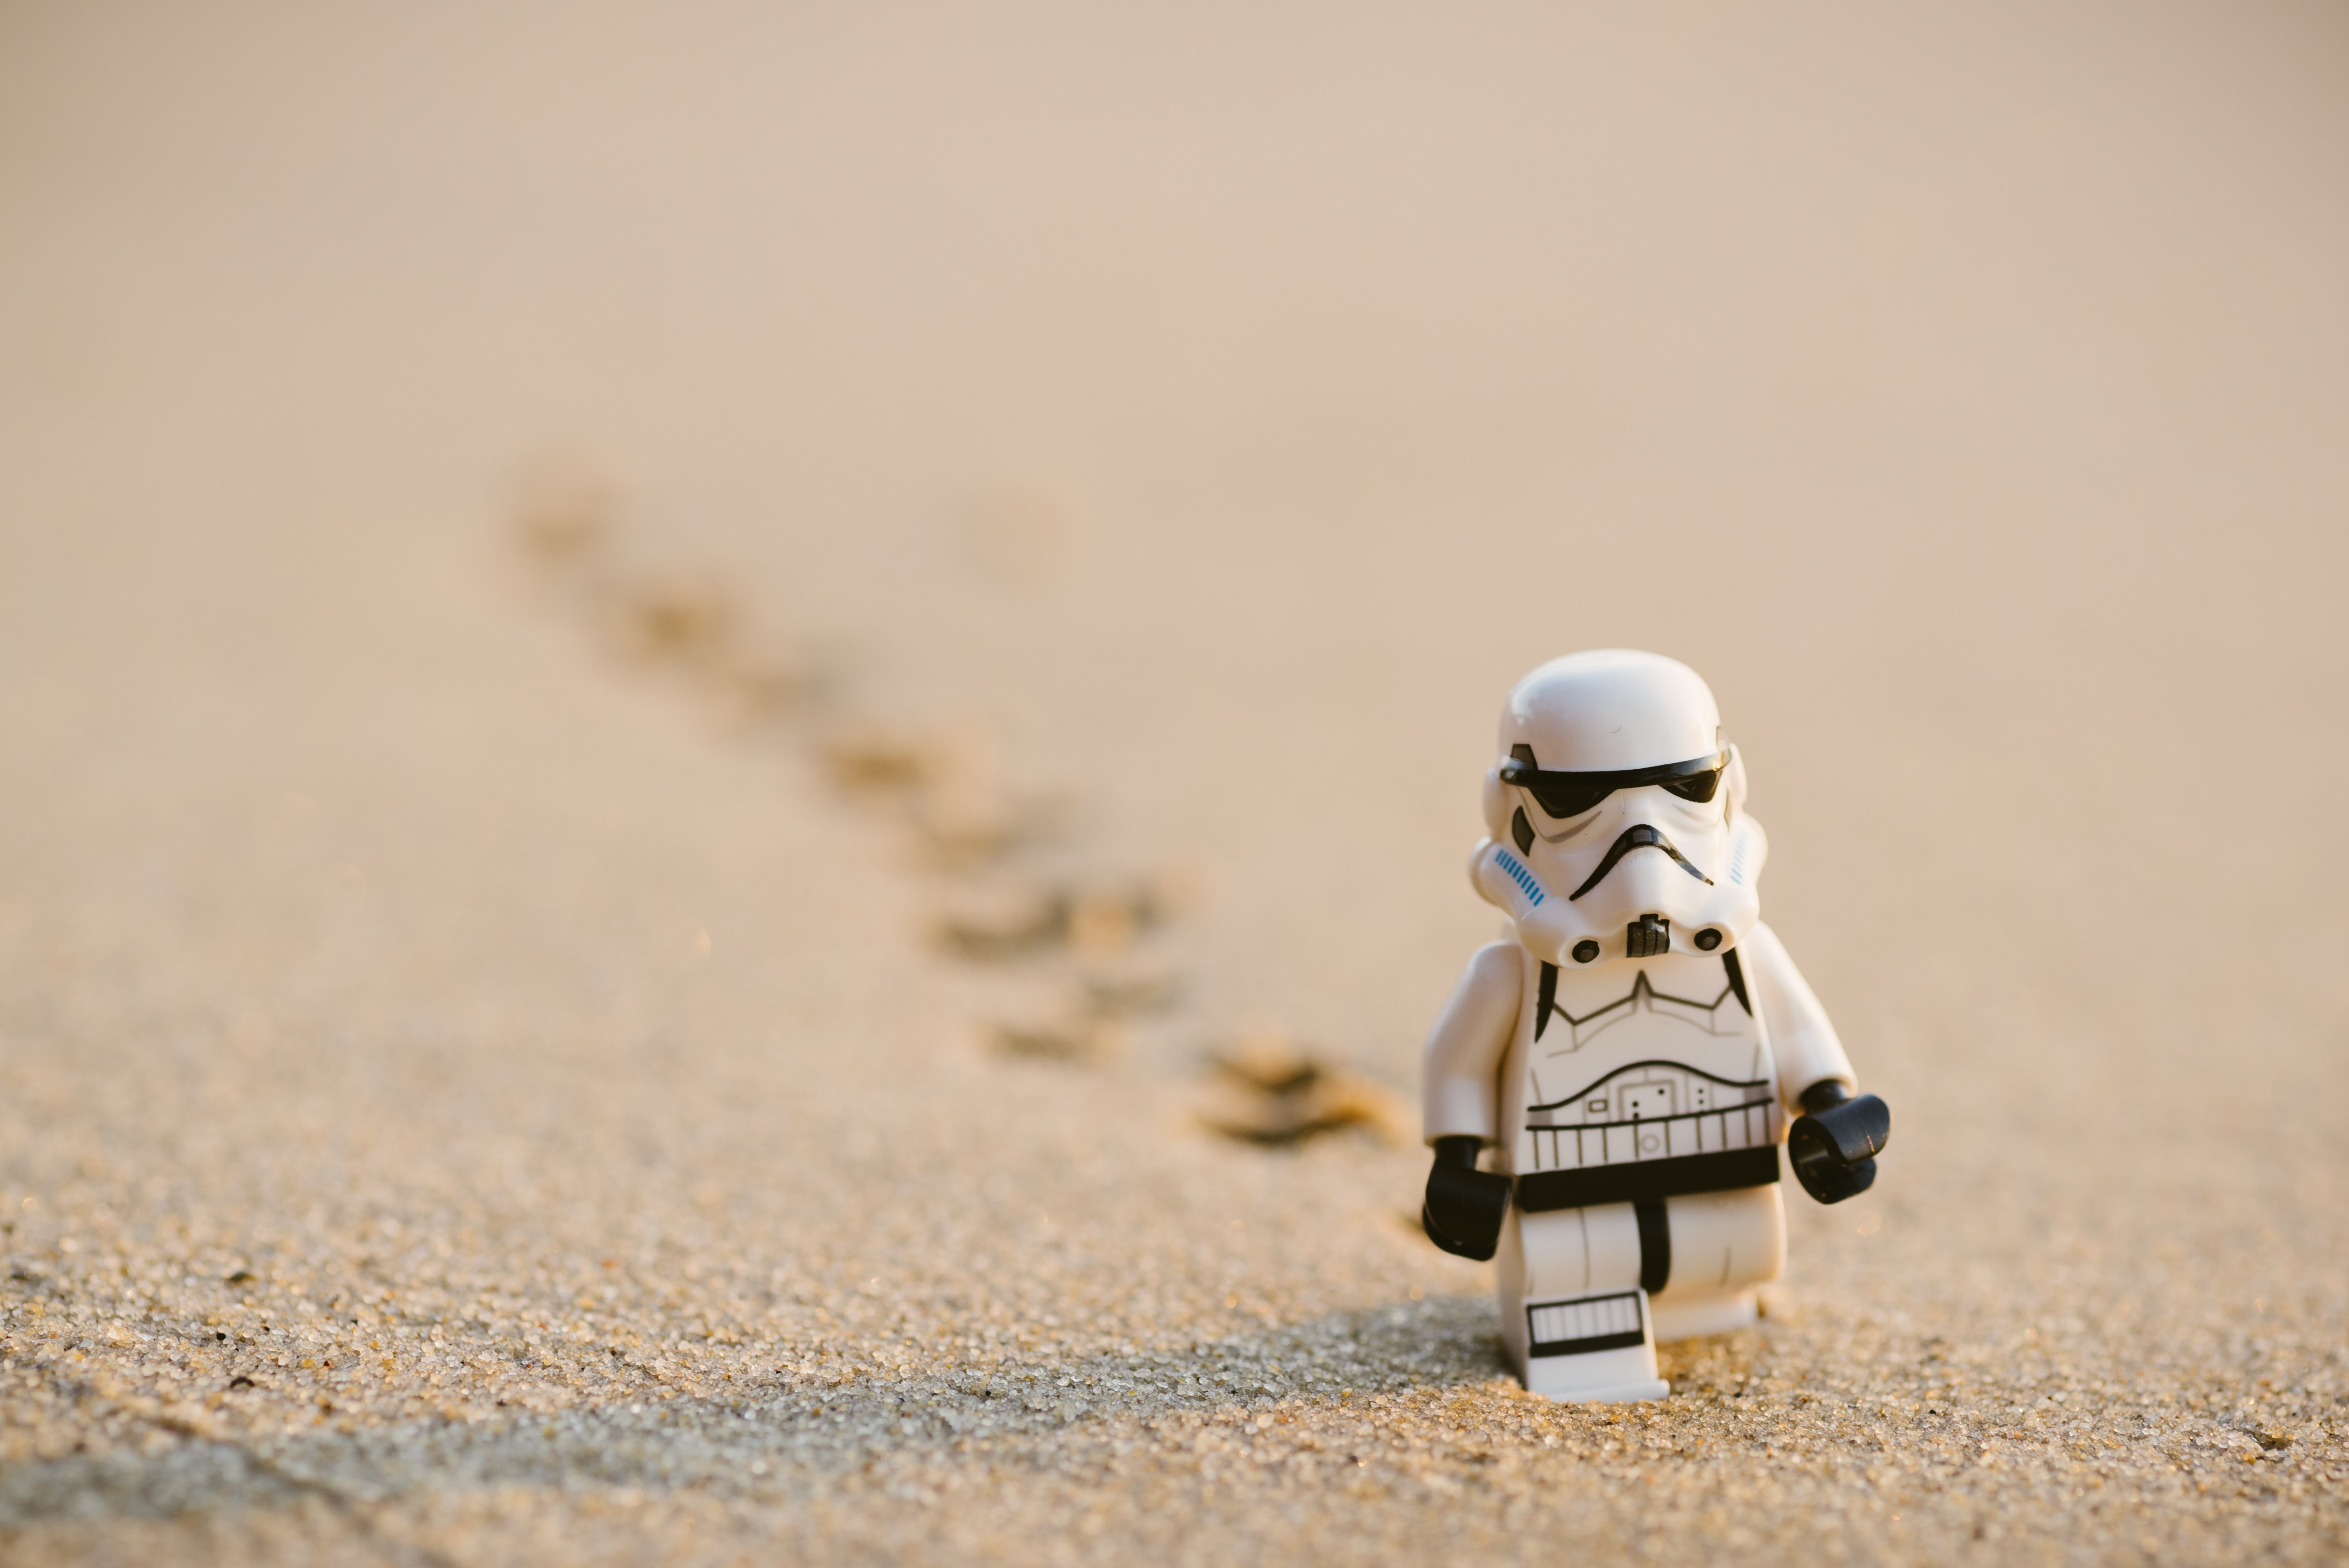 stormtrooper lego mini figure on sand